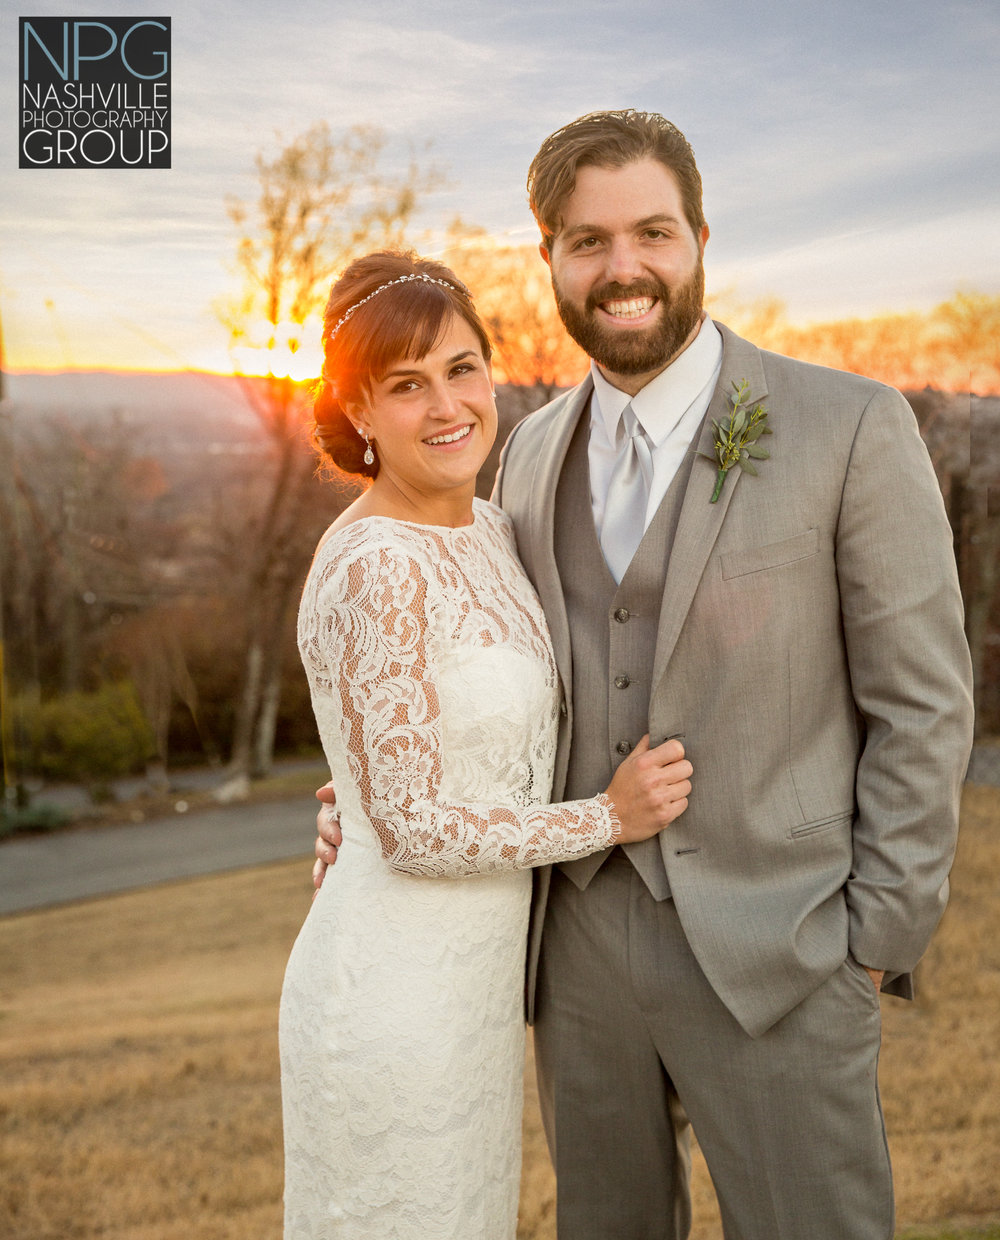 Nashville Photography Group wedding photographers-5-2.jpg